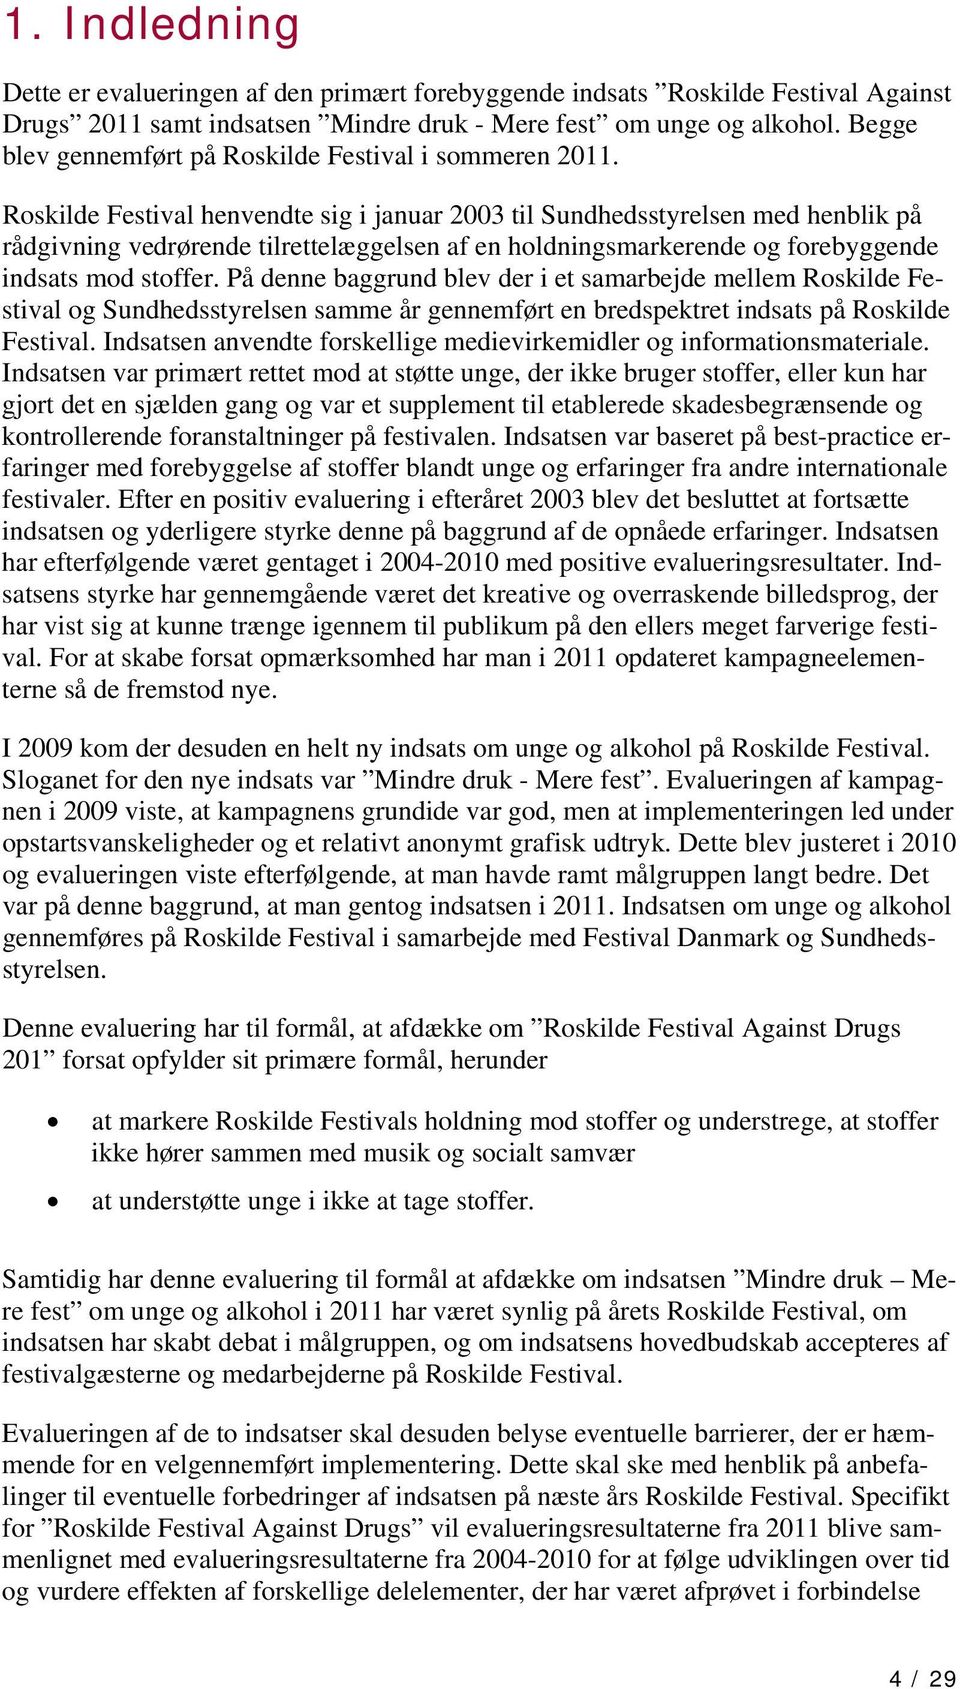 Roskilde Festival henvendte sig i januar 2003 til Sundhedsstyrelsen med henblik på rådgivning vedrørende tilrettelæggelsen af en holdningsmarkerende og forebyggende indsats mod stoffer.